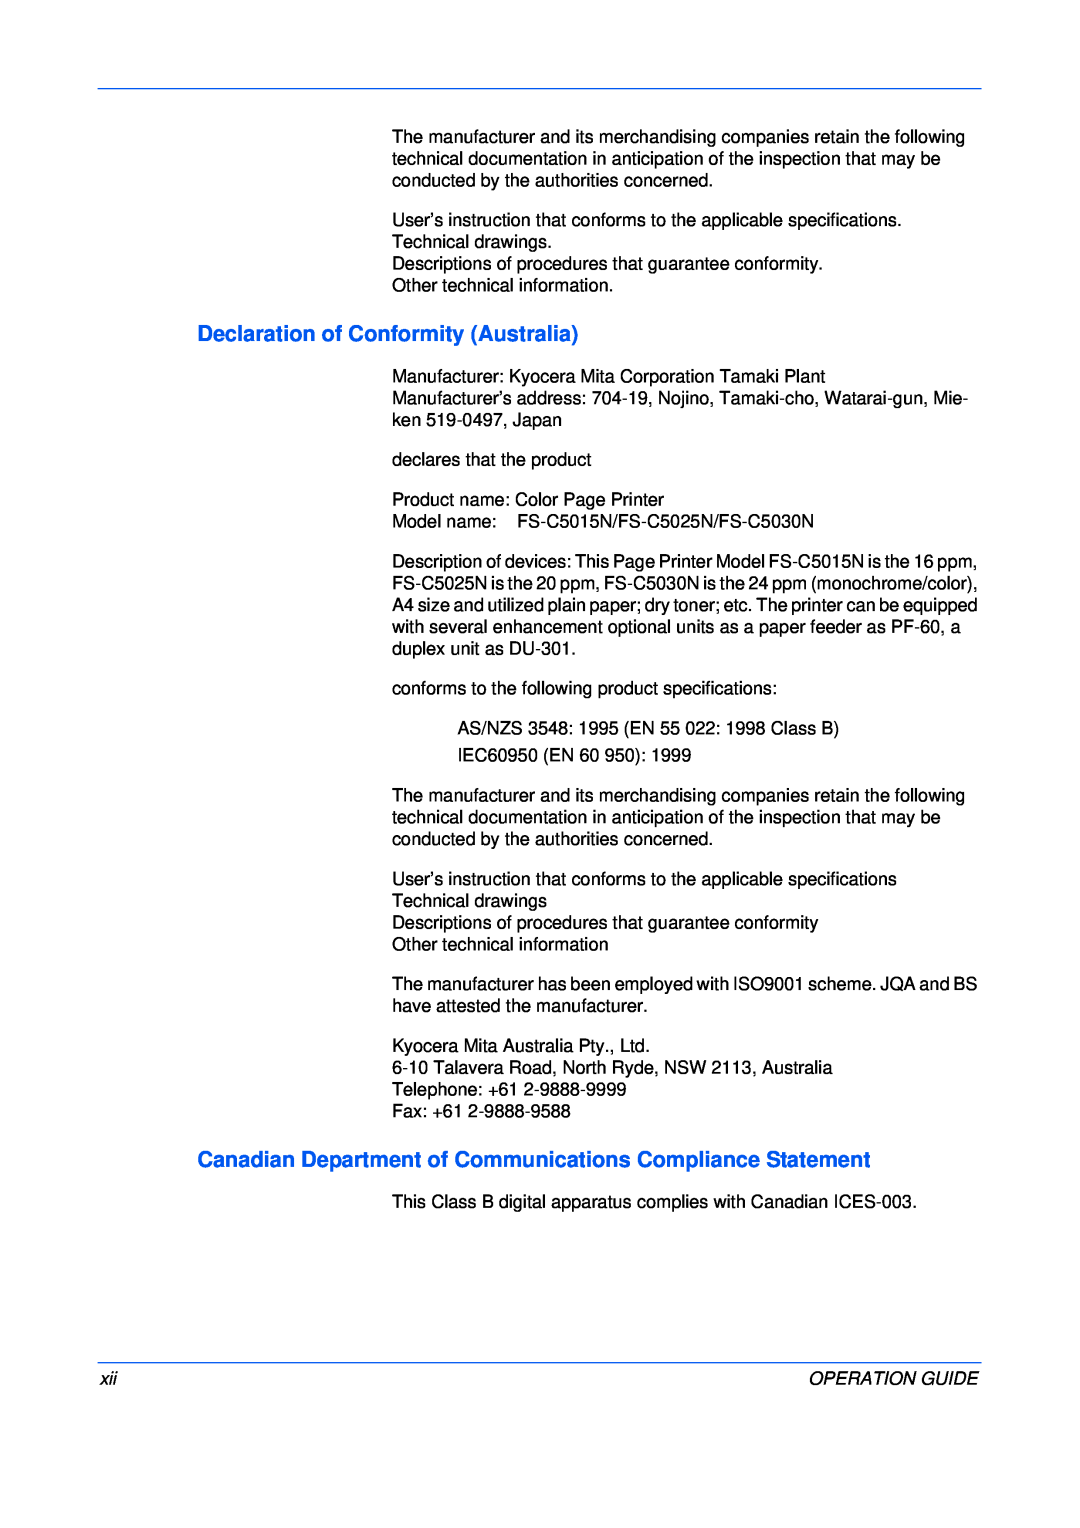 Kyocera FS-C5015N, FS-C5025N manual Declaration of Conformity Australia, Operation Guide 